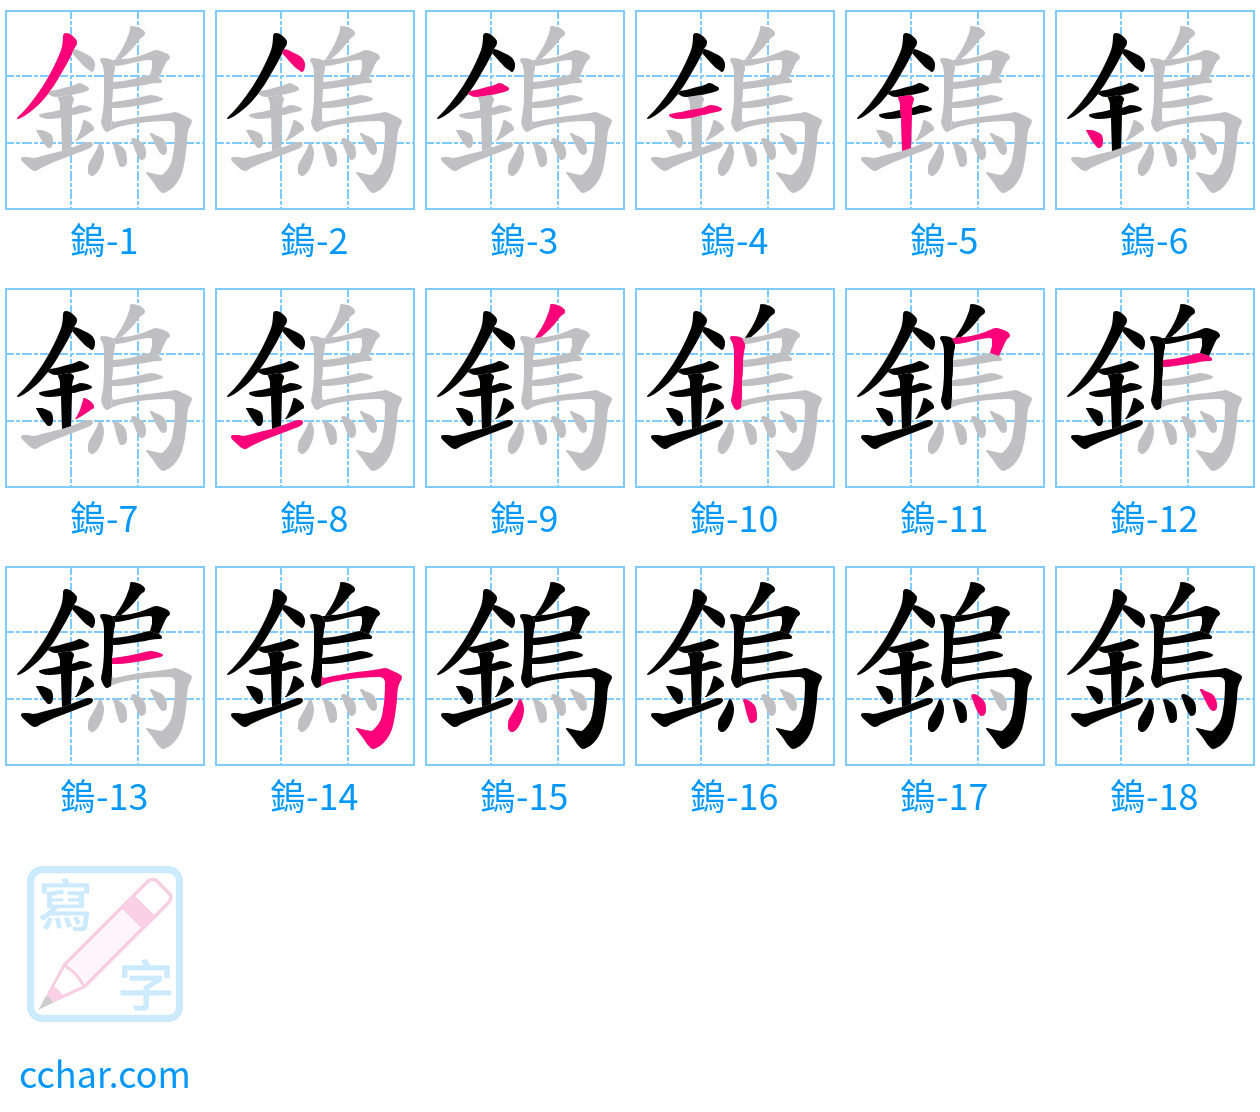 鎢 stroke order step-by-step diagram